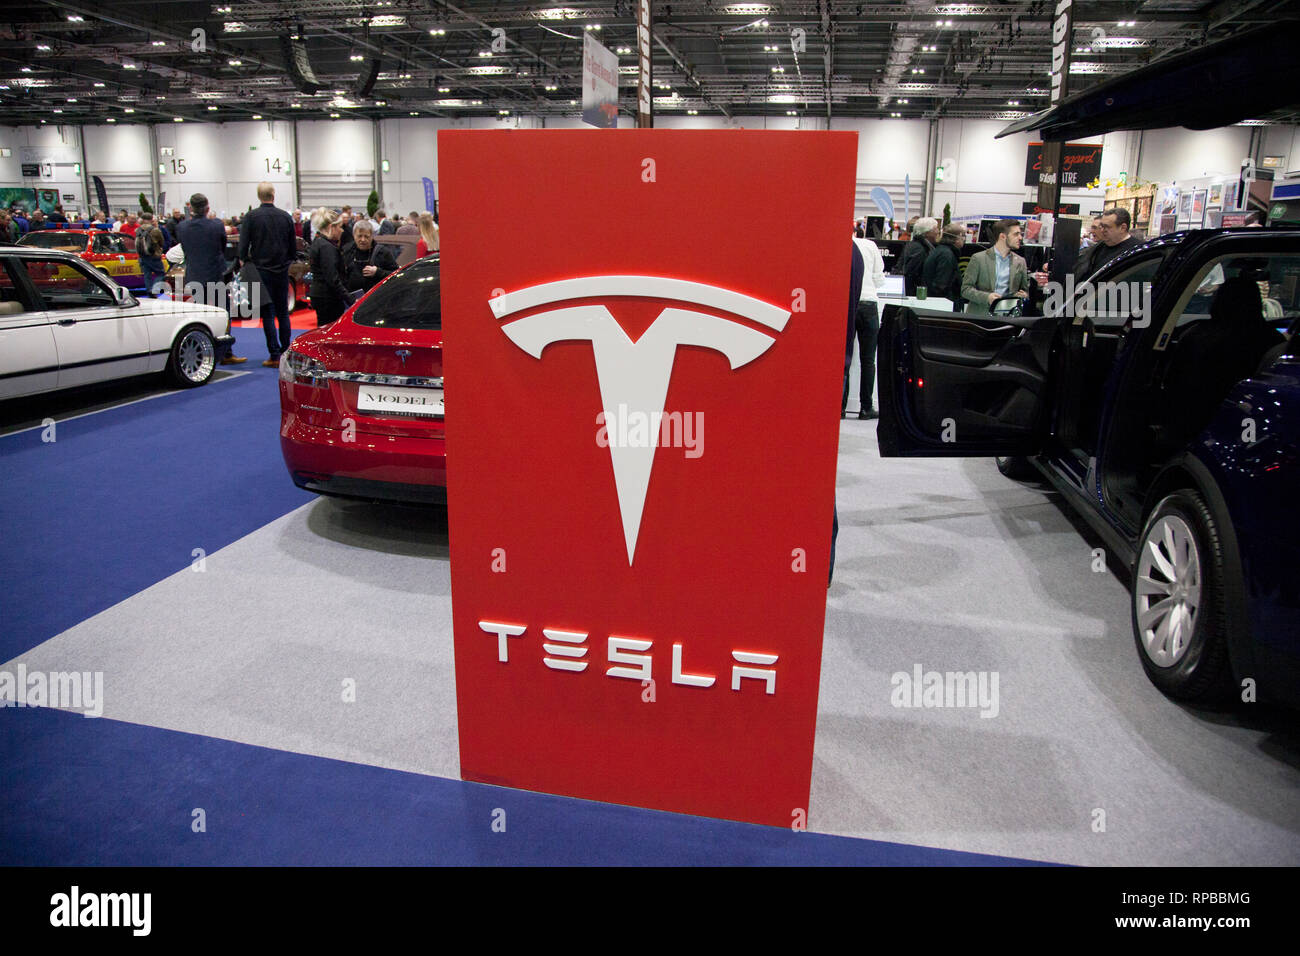 Londres, Royaume-Uni - 15 février 2019 : marque de voiture Tesla sur spectacle au salon de voitures Banque D'Images